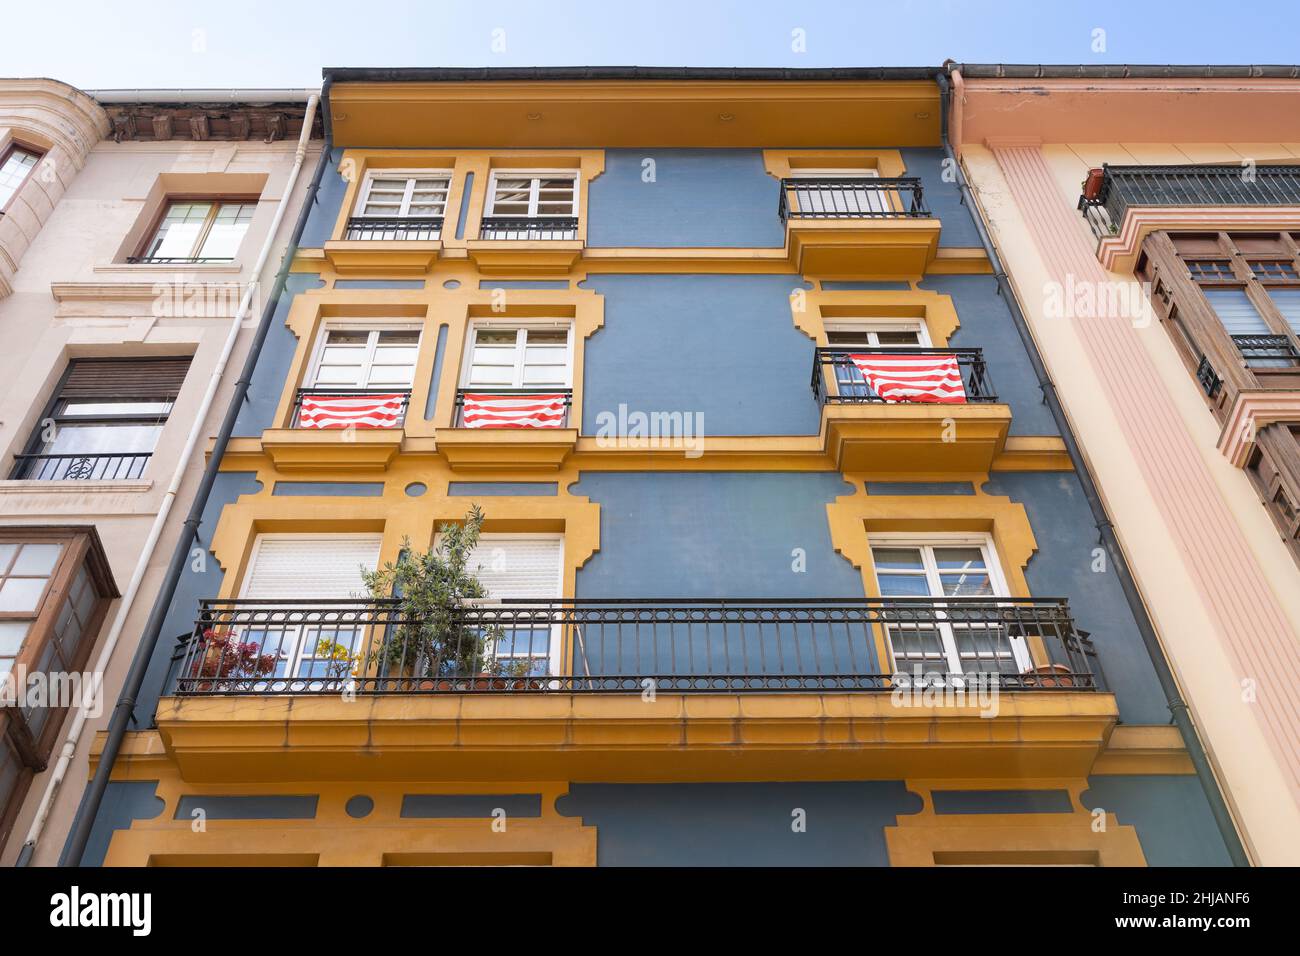 Balcons jaunes sur la façade du bâtiment résidentiel avec drapeaux rouges et blancs dans la ville de Bilbao. Affaires immobilières, concepts de style d'architecture classique Banque D'Images